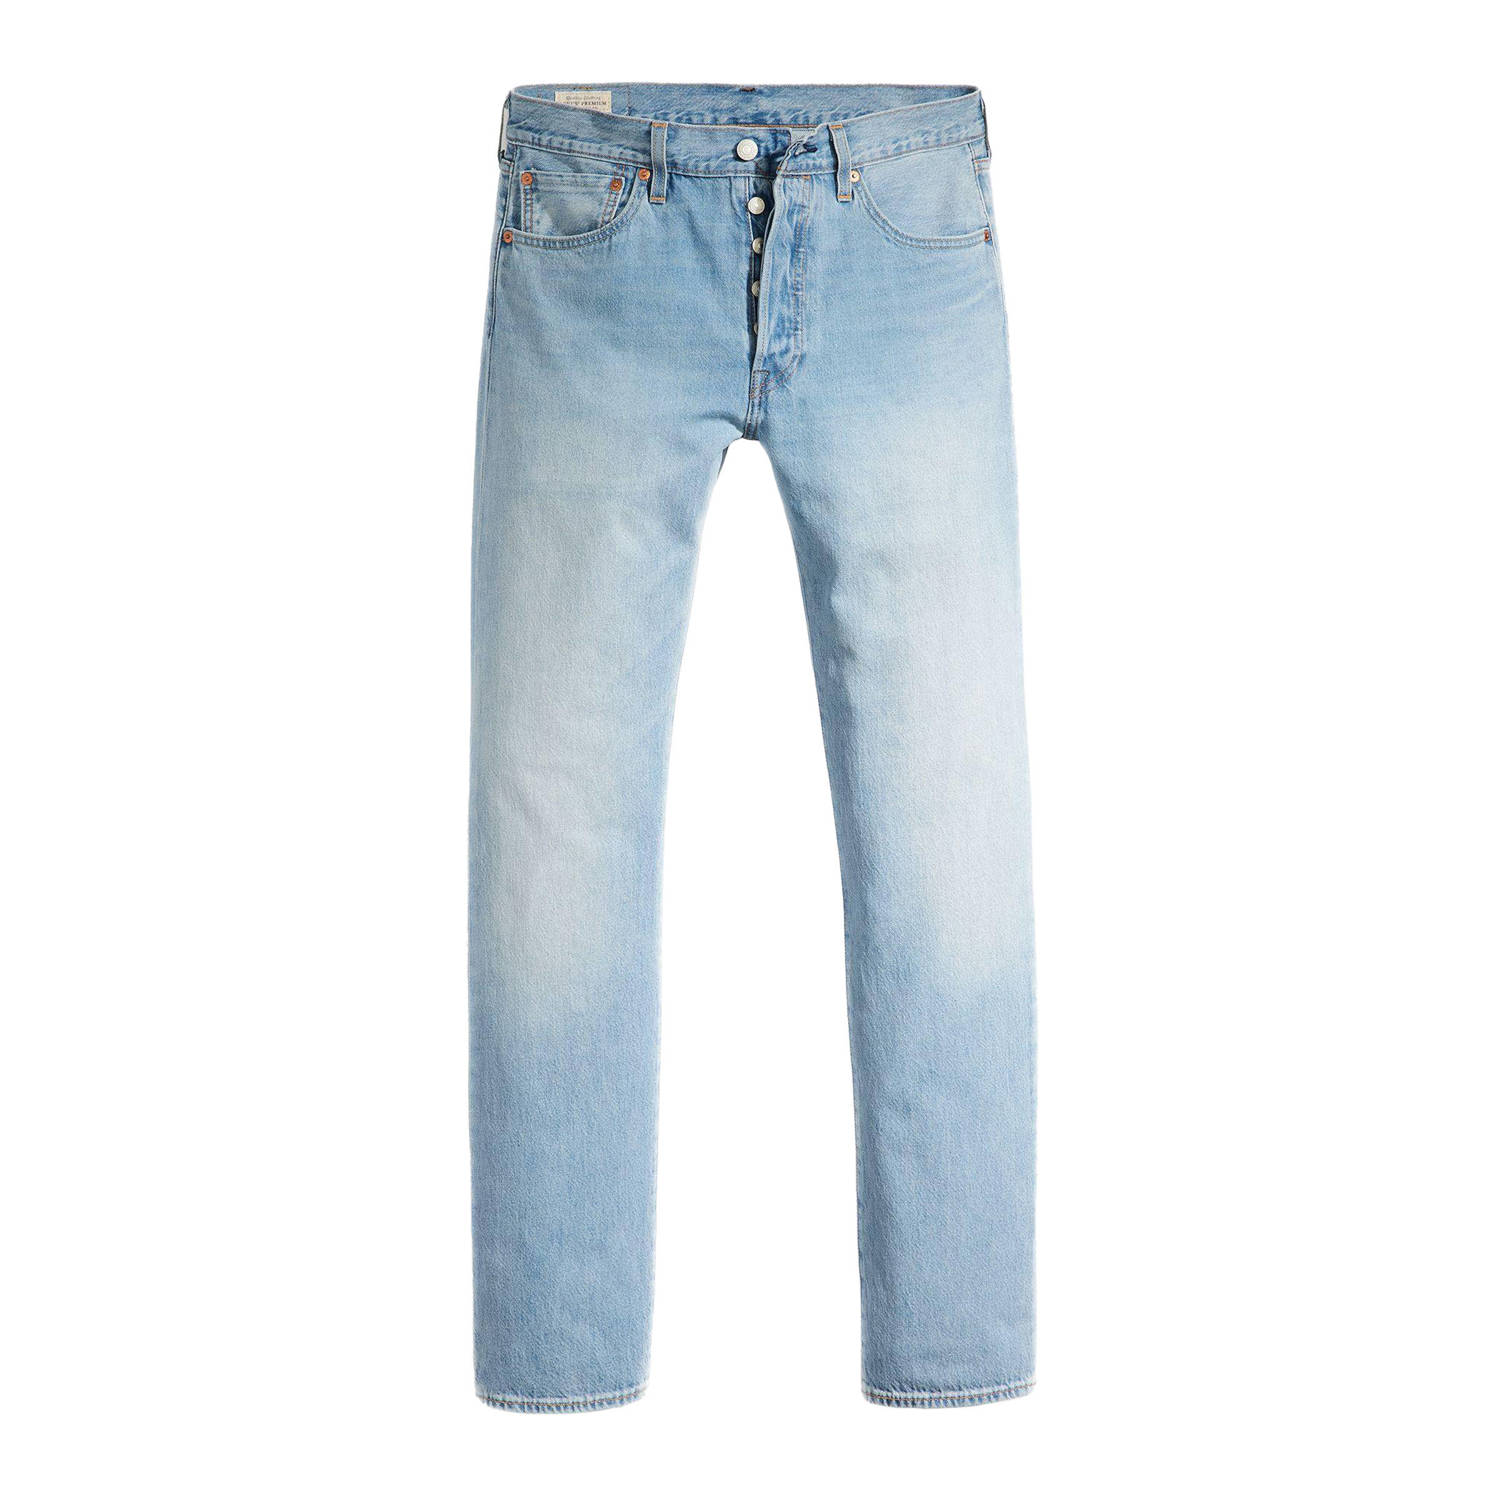 Levi's 501 straight fit jeans let it happen